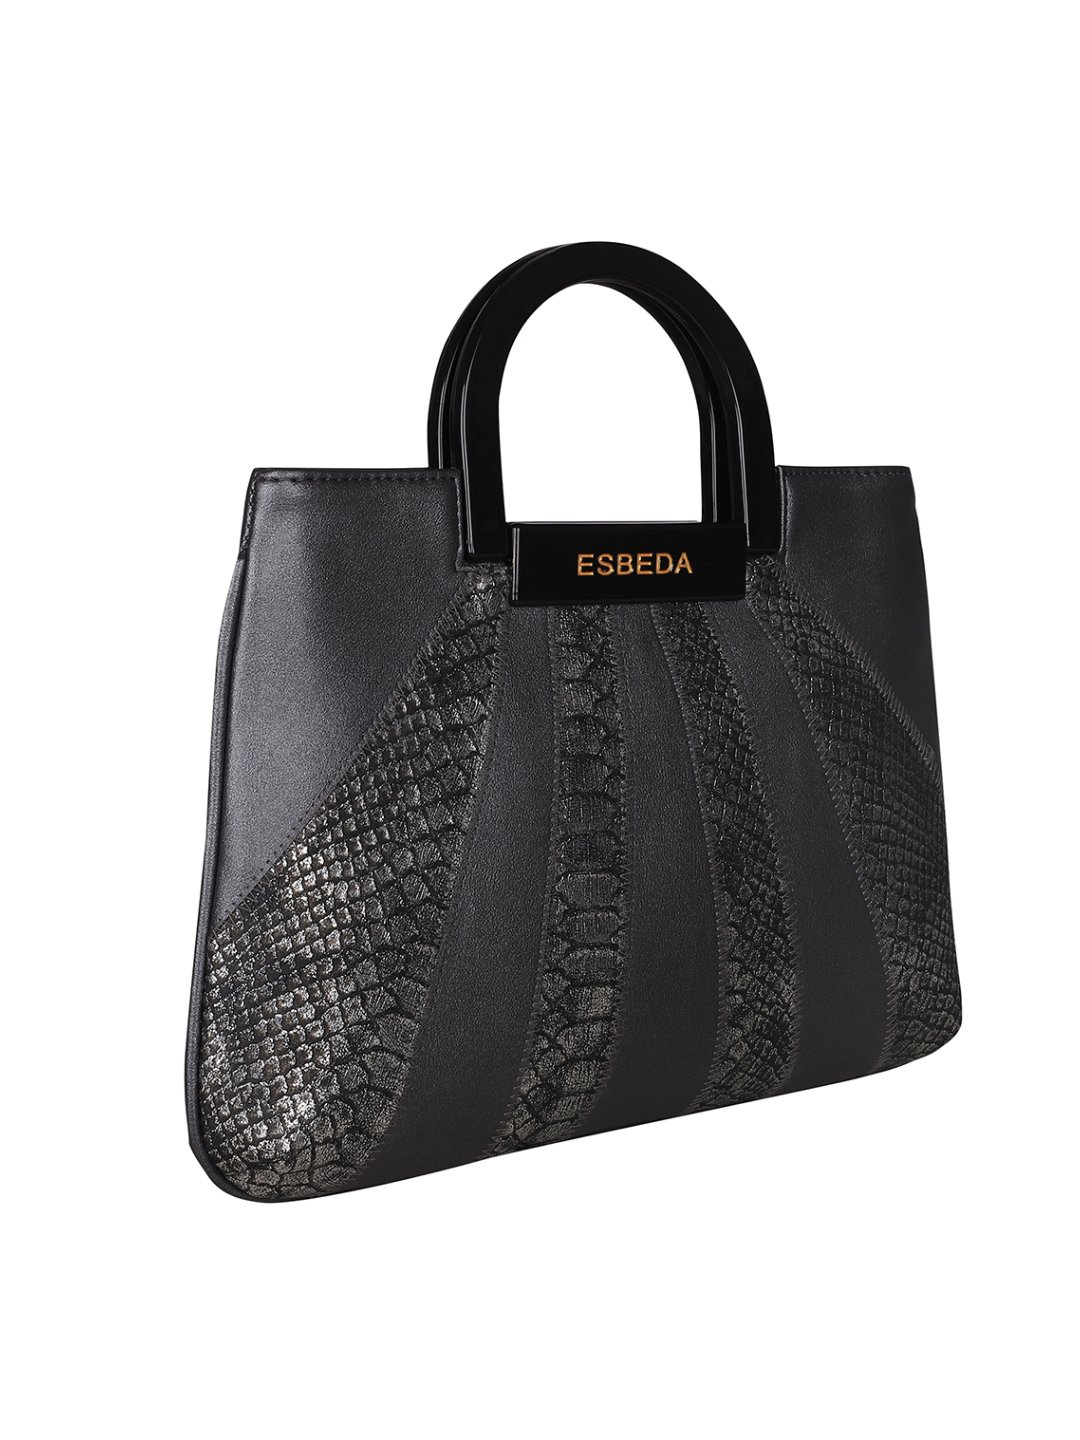 Buy ESBEDA Women Silver Hand-held Bag SILVER Online @ Best Price in India |  Flipkart.com